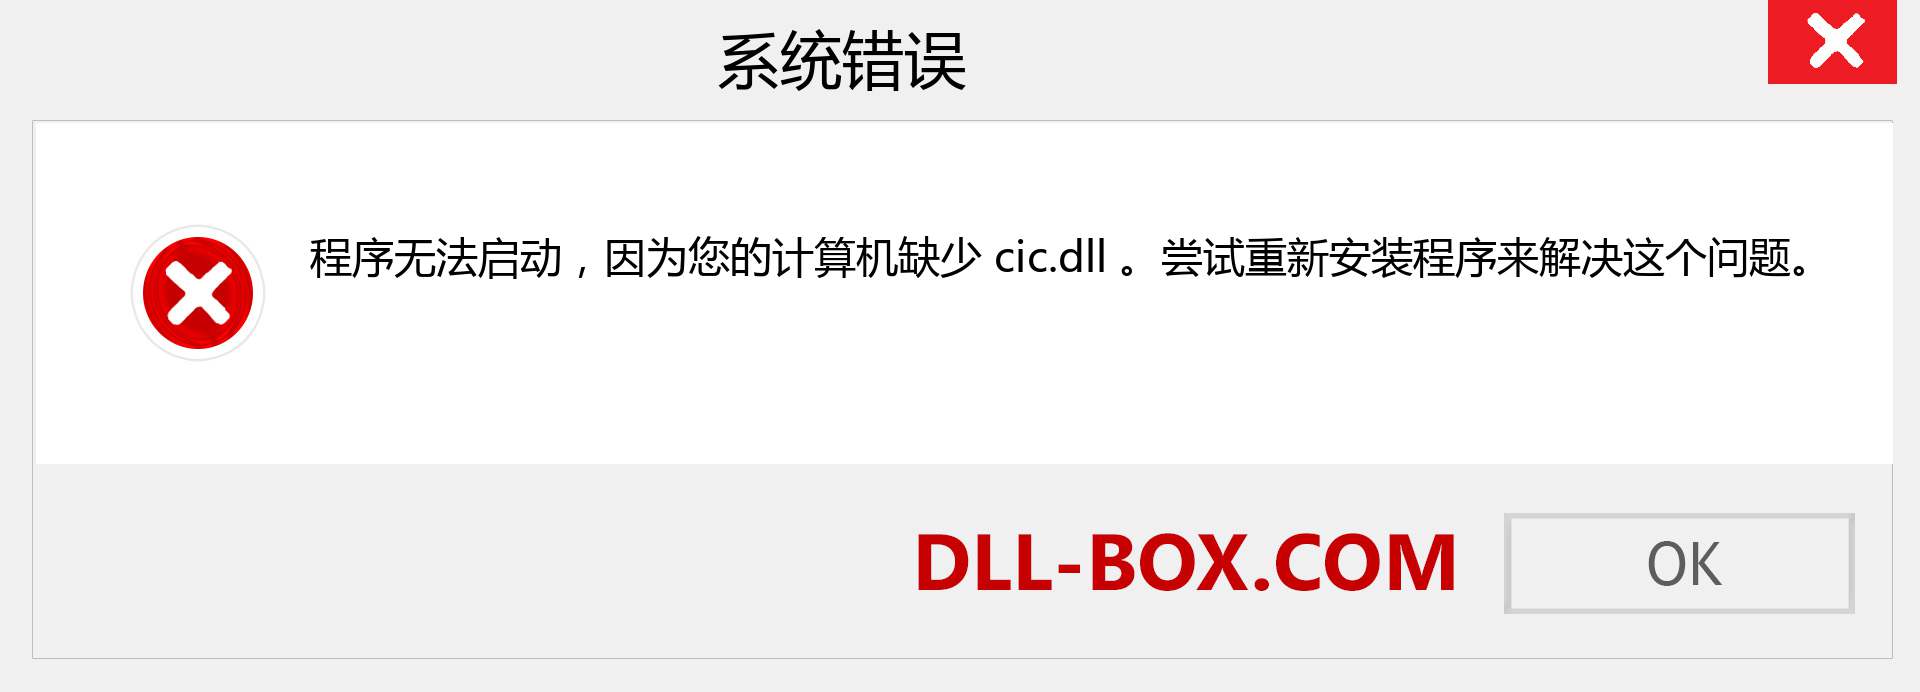 cic.dll 文件丢失？。 适用于 Windows 7、8、10 的下载 - 修复 Windows、照片、图像上的 cic dll 丢失错误